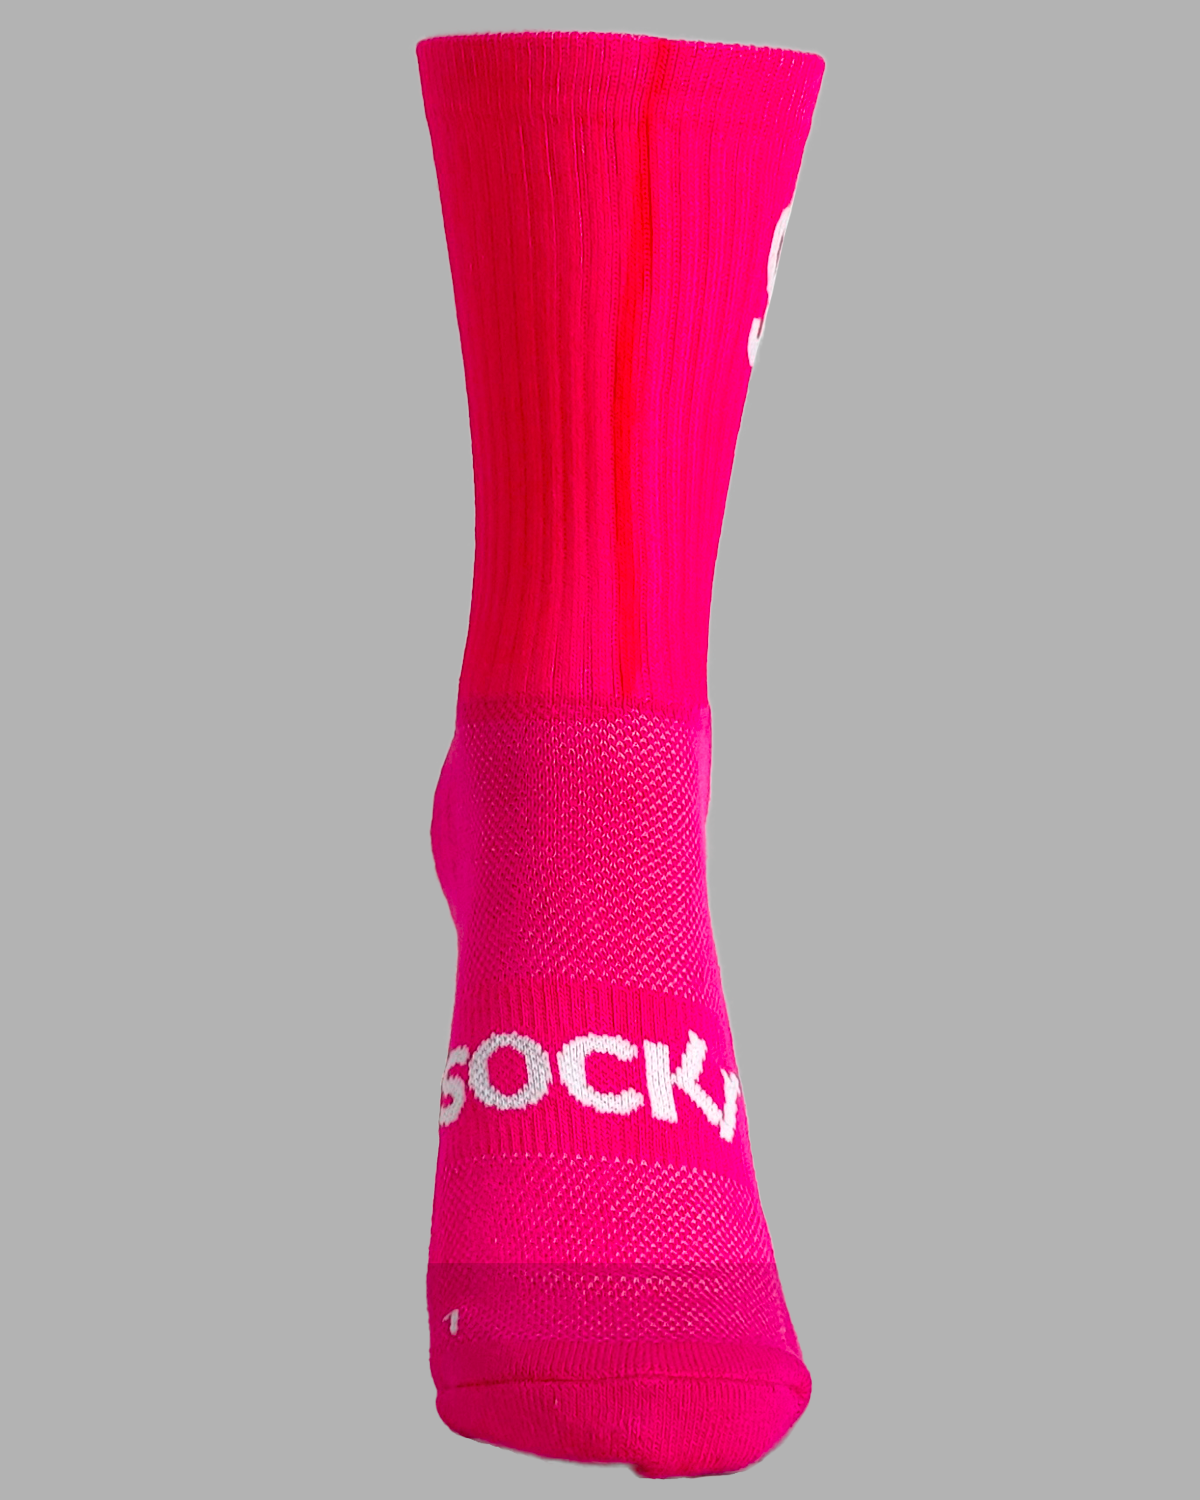 Sockr Sportsocke pink